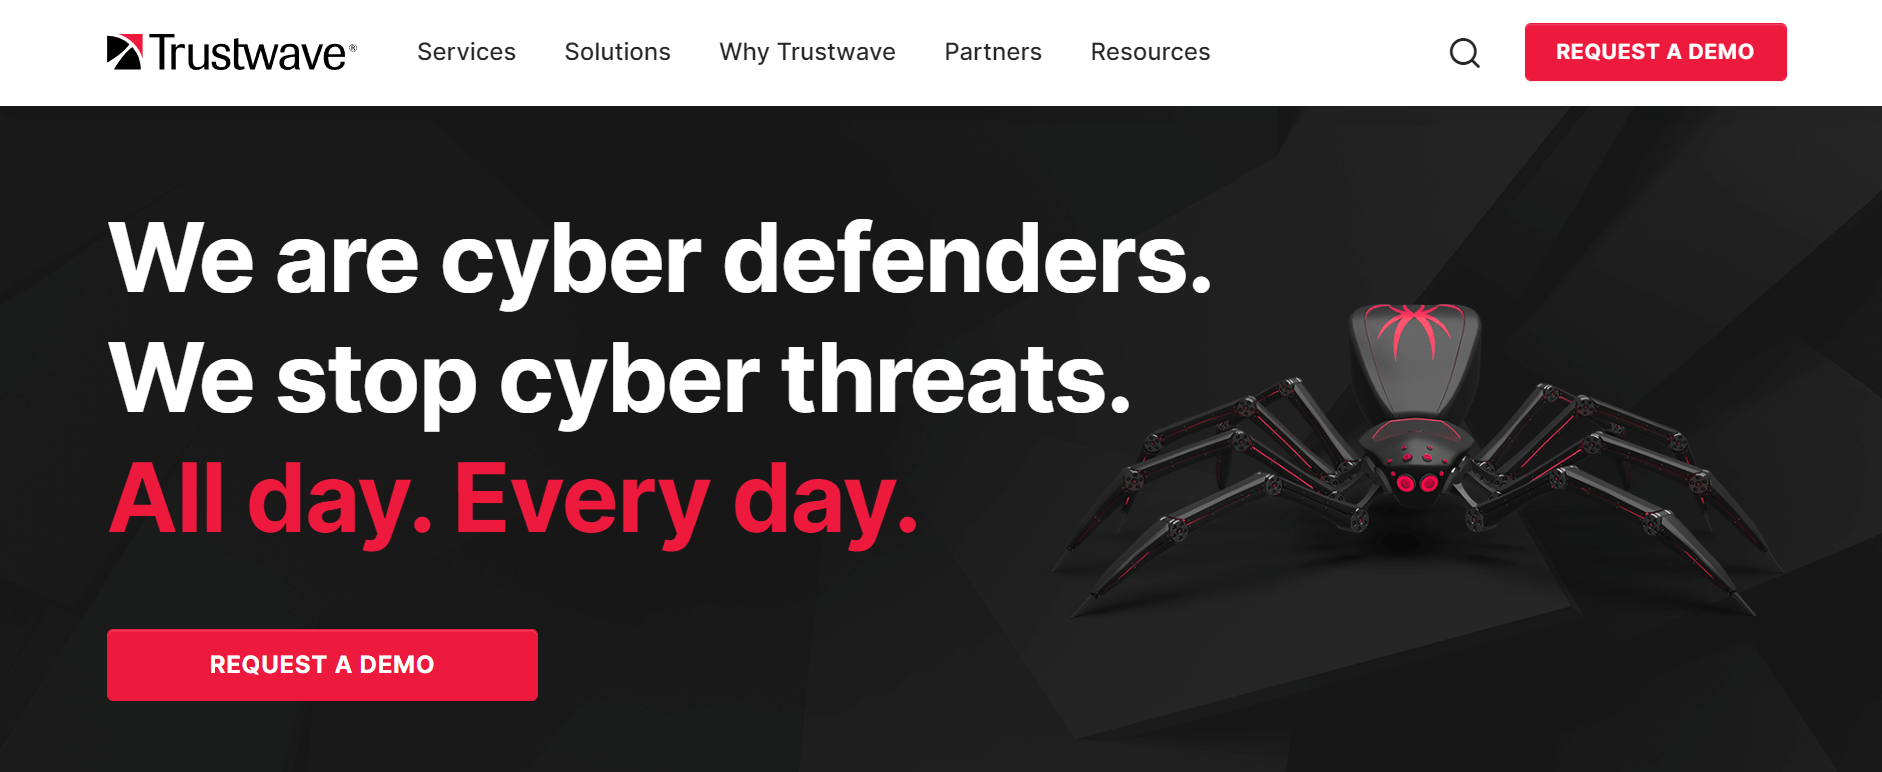 Trustwave homepage